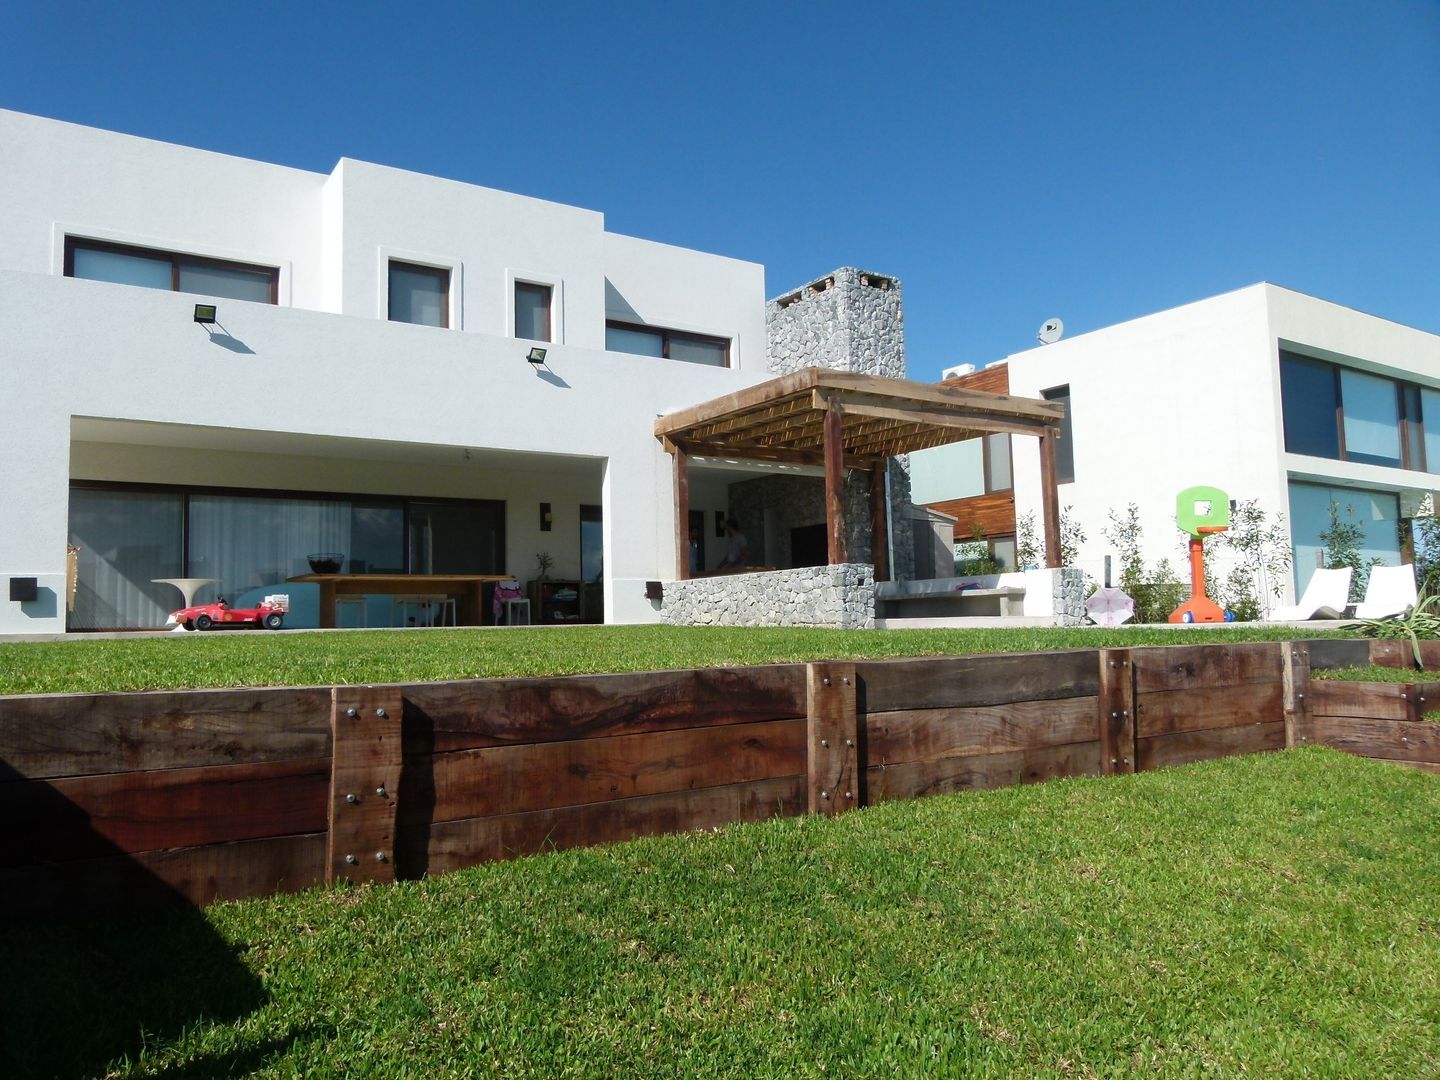 Alisos 74, Nordelta, HOUSING ARGENTINA SA HOUSING ARGENTINA SA Casas modernas: Ideas, imágenes y decoración